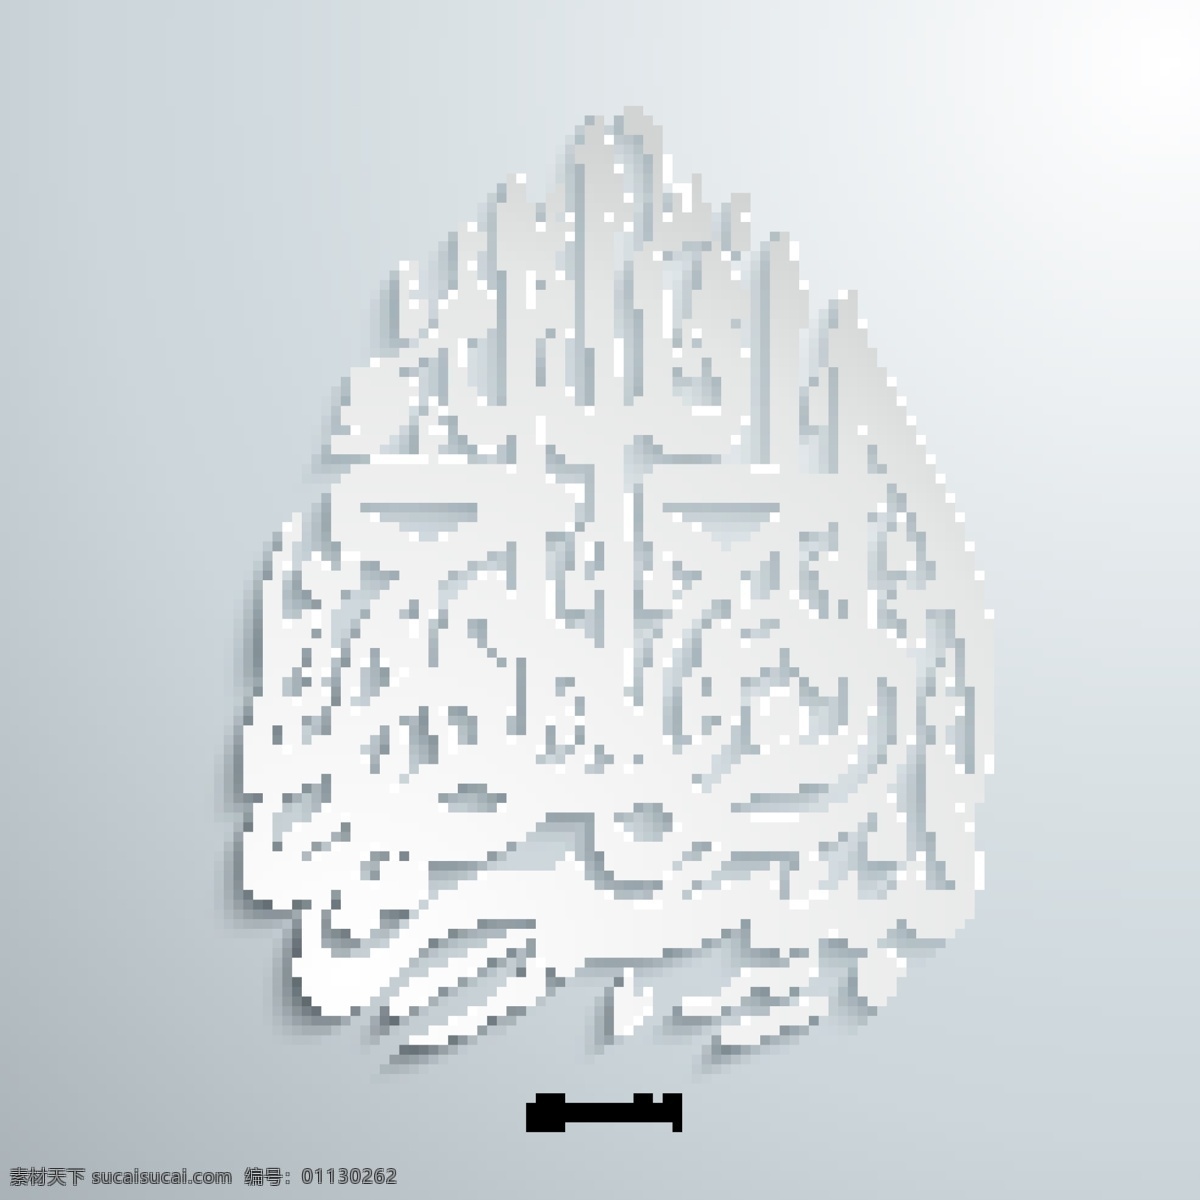 白色 立体 阿拉伯 书法 立体字体 字体 字母 阿拉伯书法 立体背景 书画文字 文化艺术 矢量素材